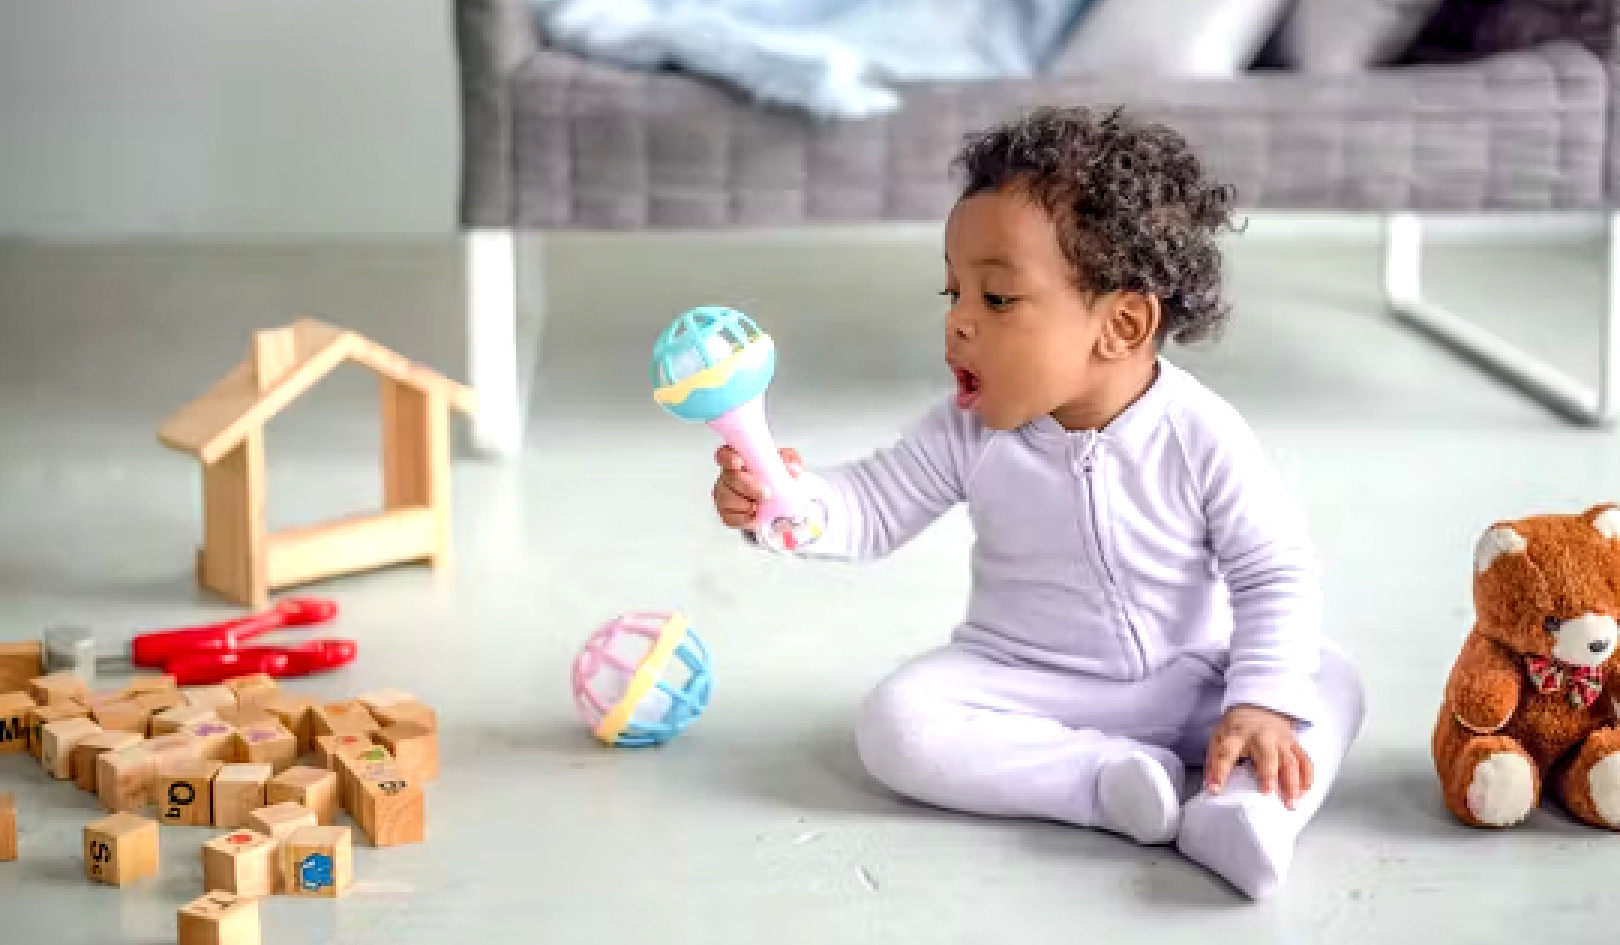 Das richtige Babyspielzeug auswählen: Wissenschaftlich fundierte Tipps für Spaß und Entwicklung